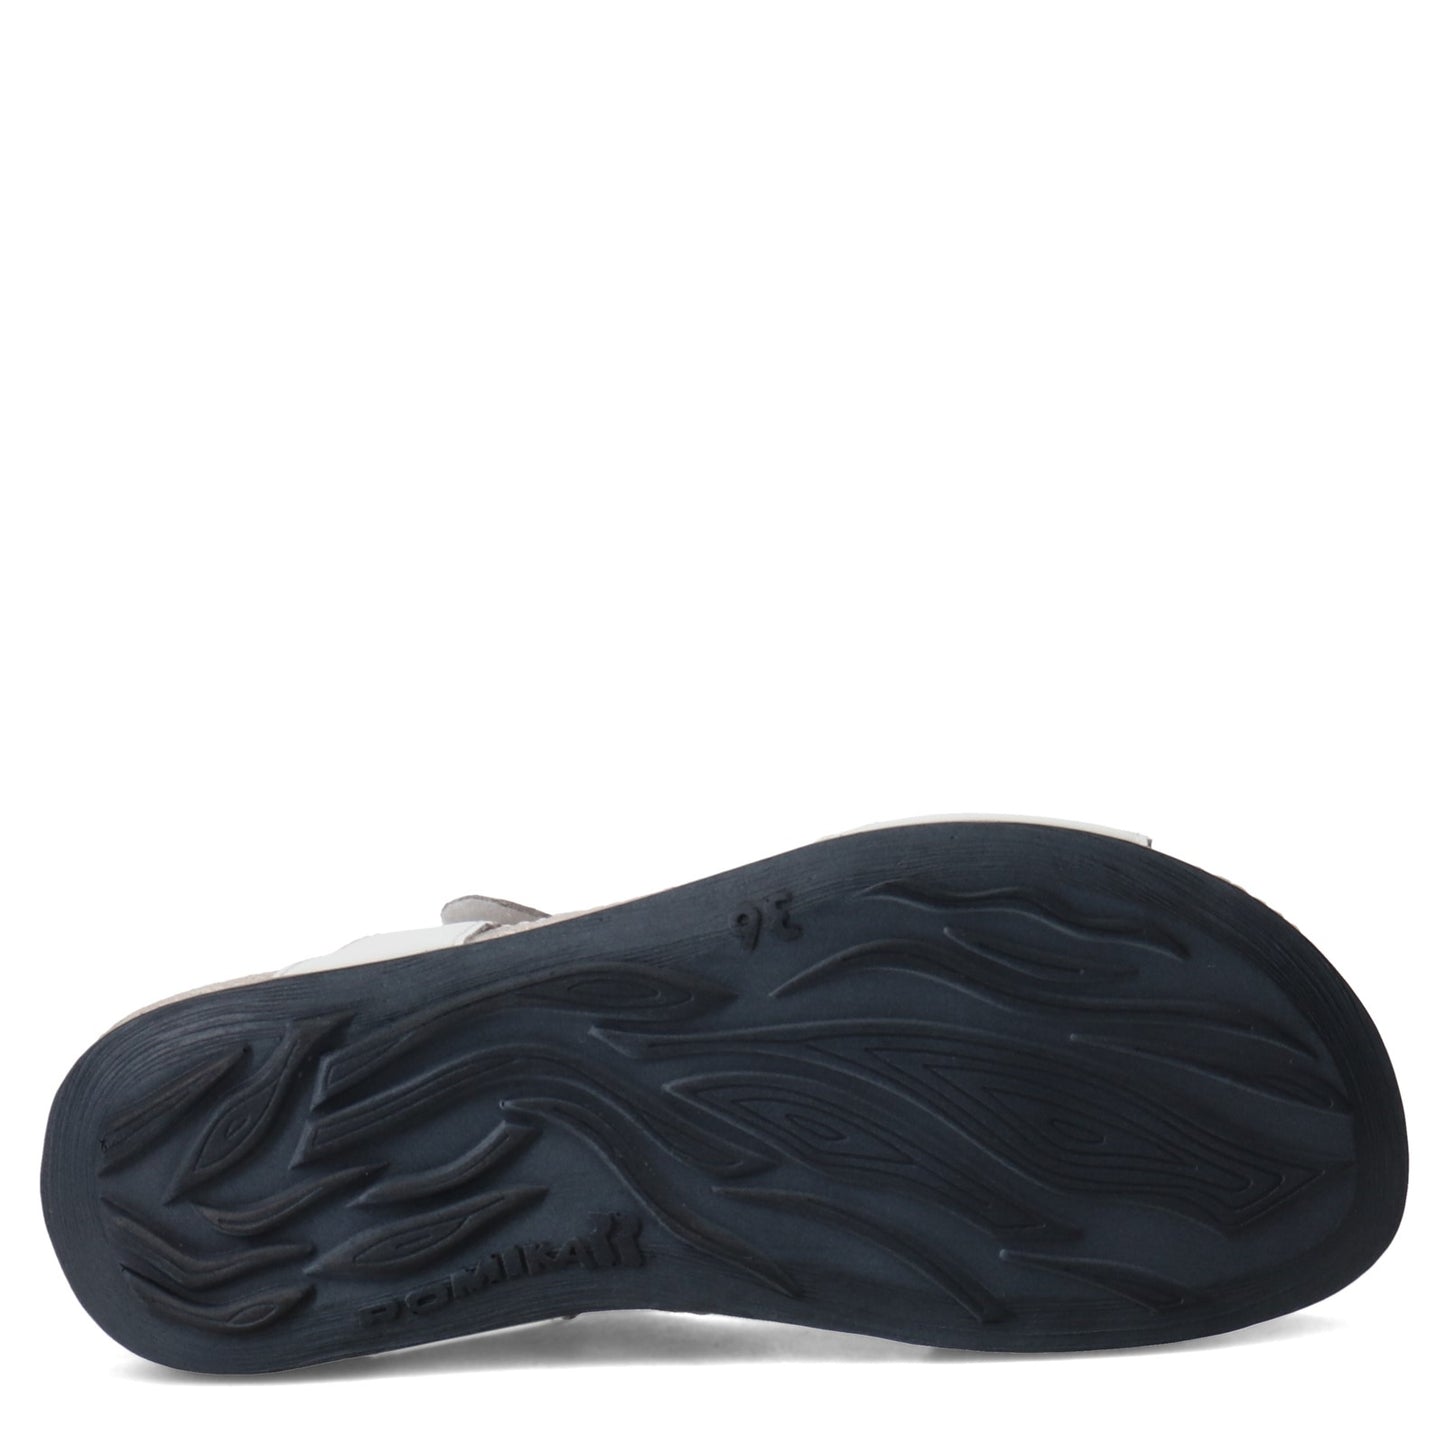 Peltz Shoes  Women's Romika Fidschi 54 Sandal WHITE 11054-34002